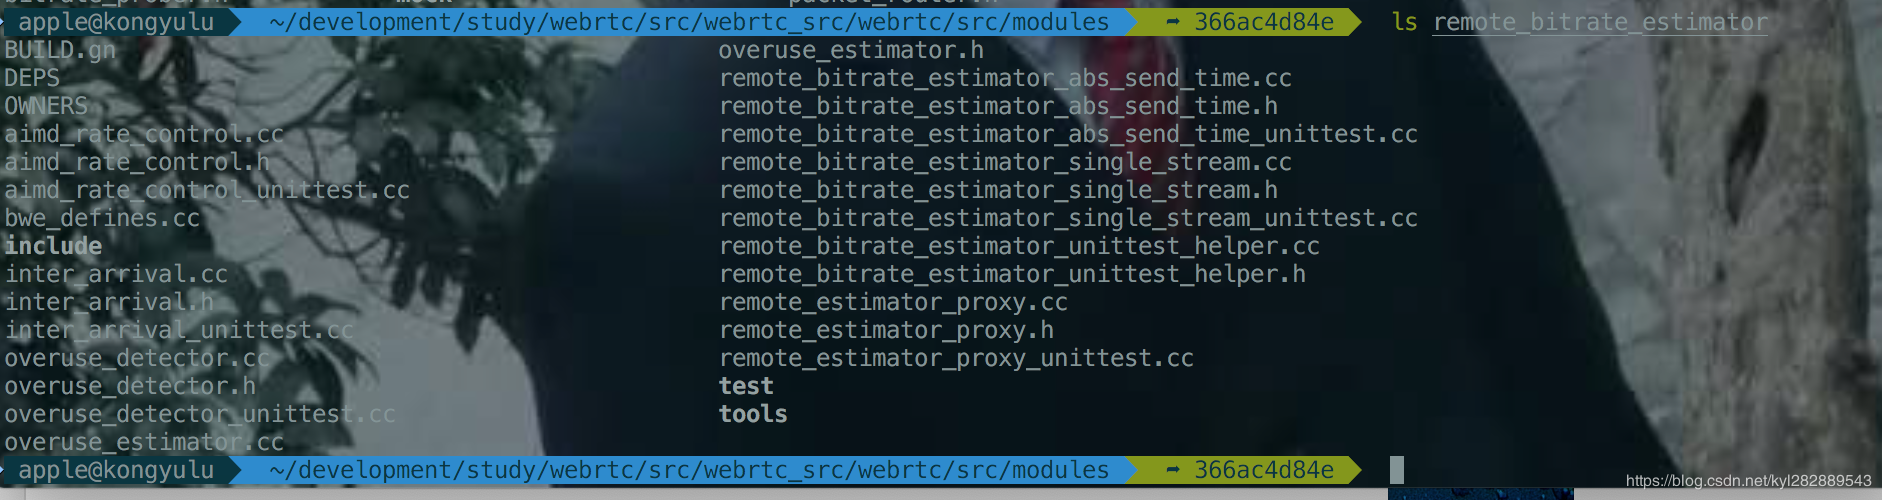 modules/remote_bitrate_estimator 目录